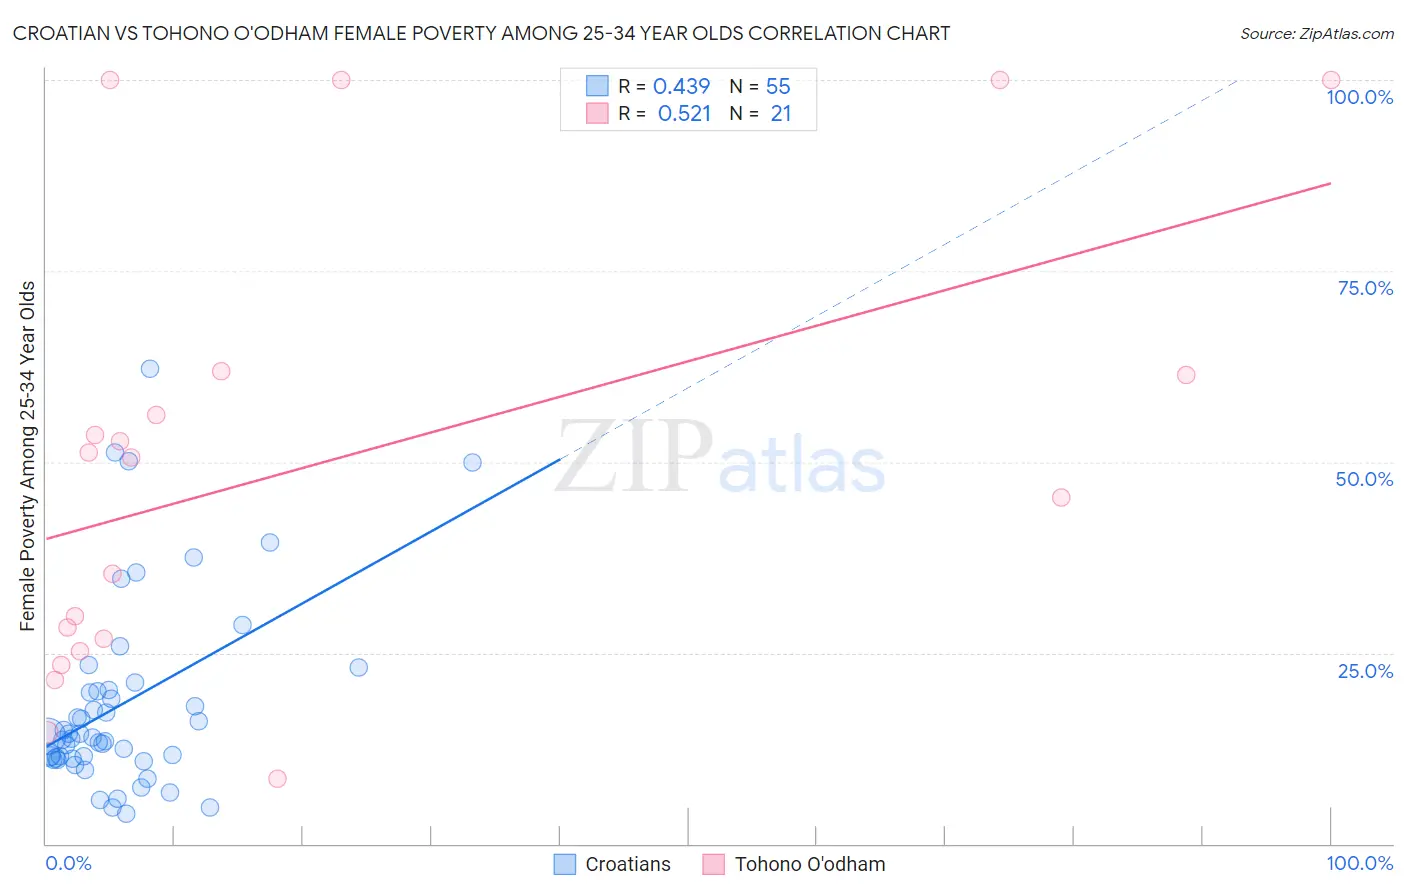 Croatian vs Tohono O'odham Female Poverty Among 25-34 Year Olds